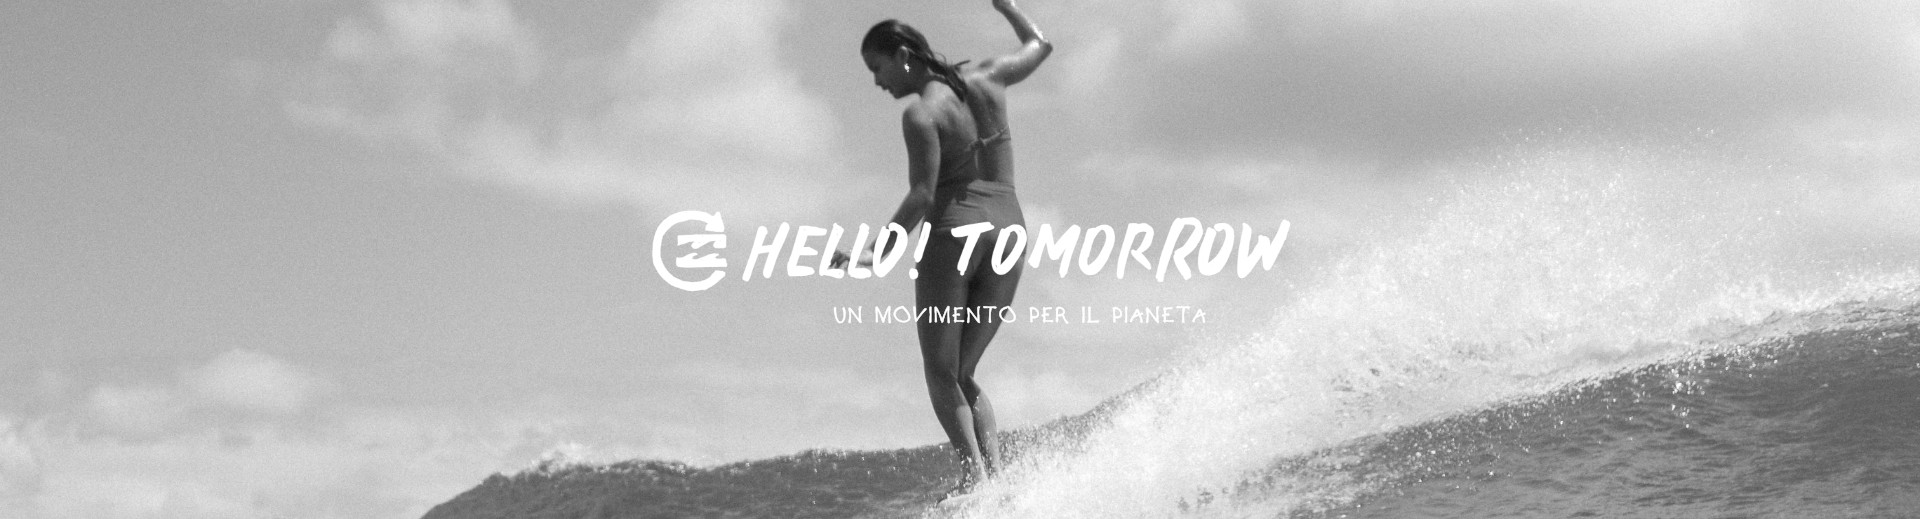 Hello! Tomorrow
Un movimento per il pianeta